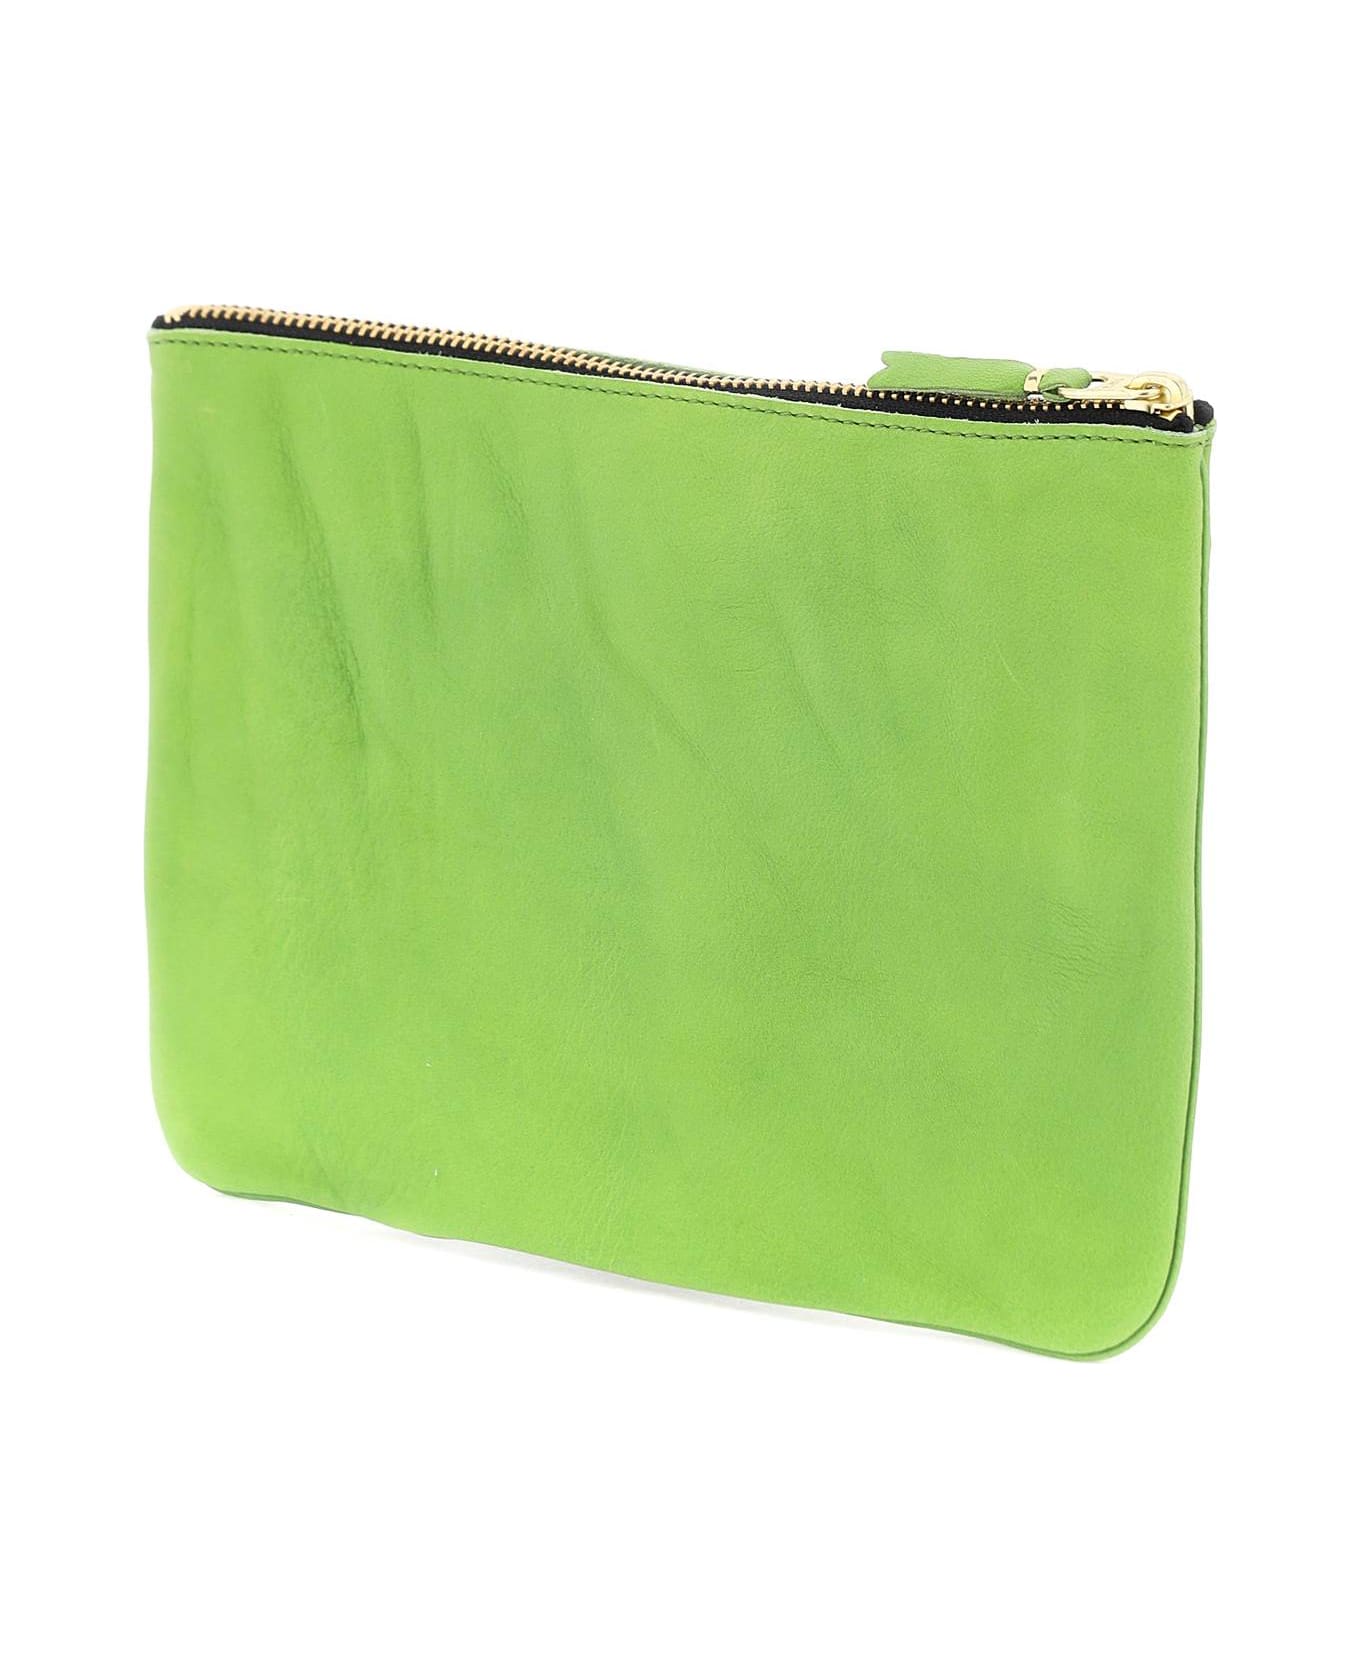 Comme des Garçons Wallet Classic Pouch - GREEN (Green)